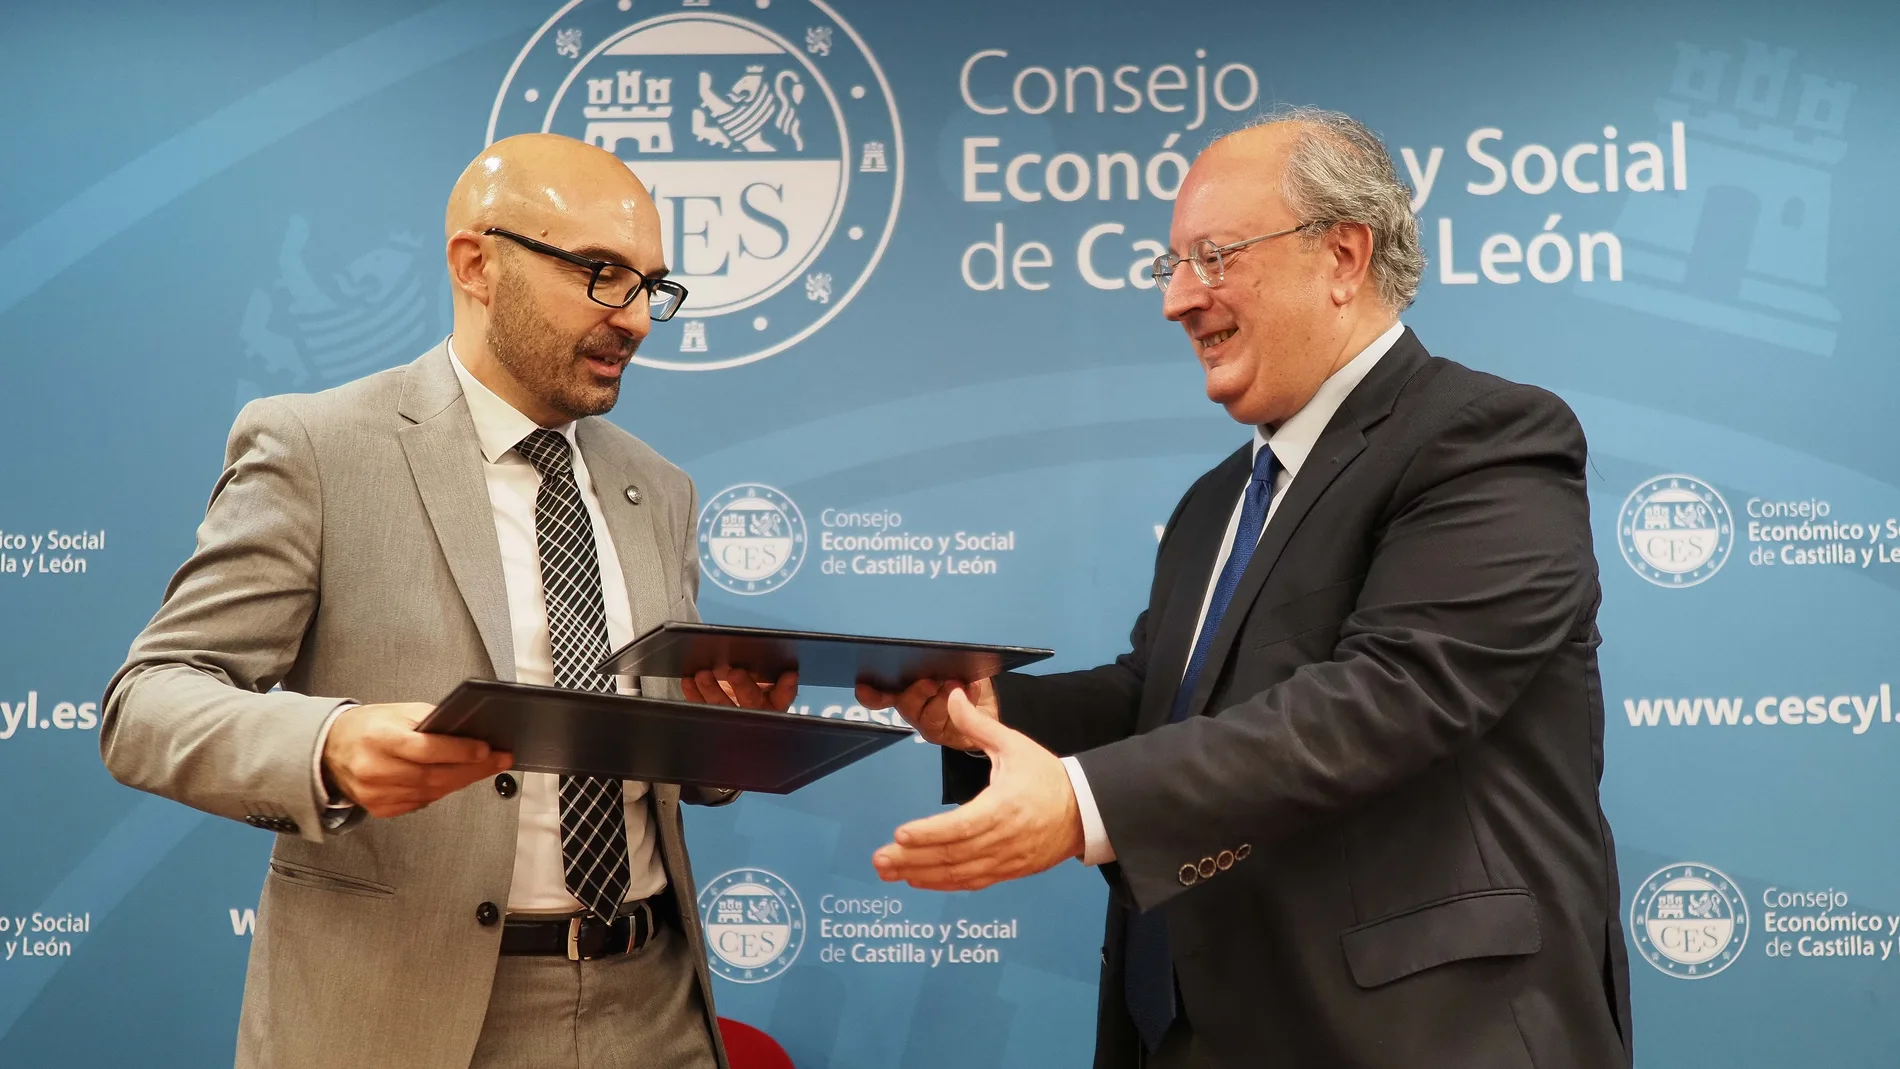 El presidente del CESCyL, Enrique Cabero, y el presidente de la AEET, Ángel Luis Martín, suscriben el acuerdo de colaboración